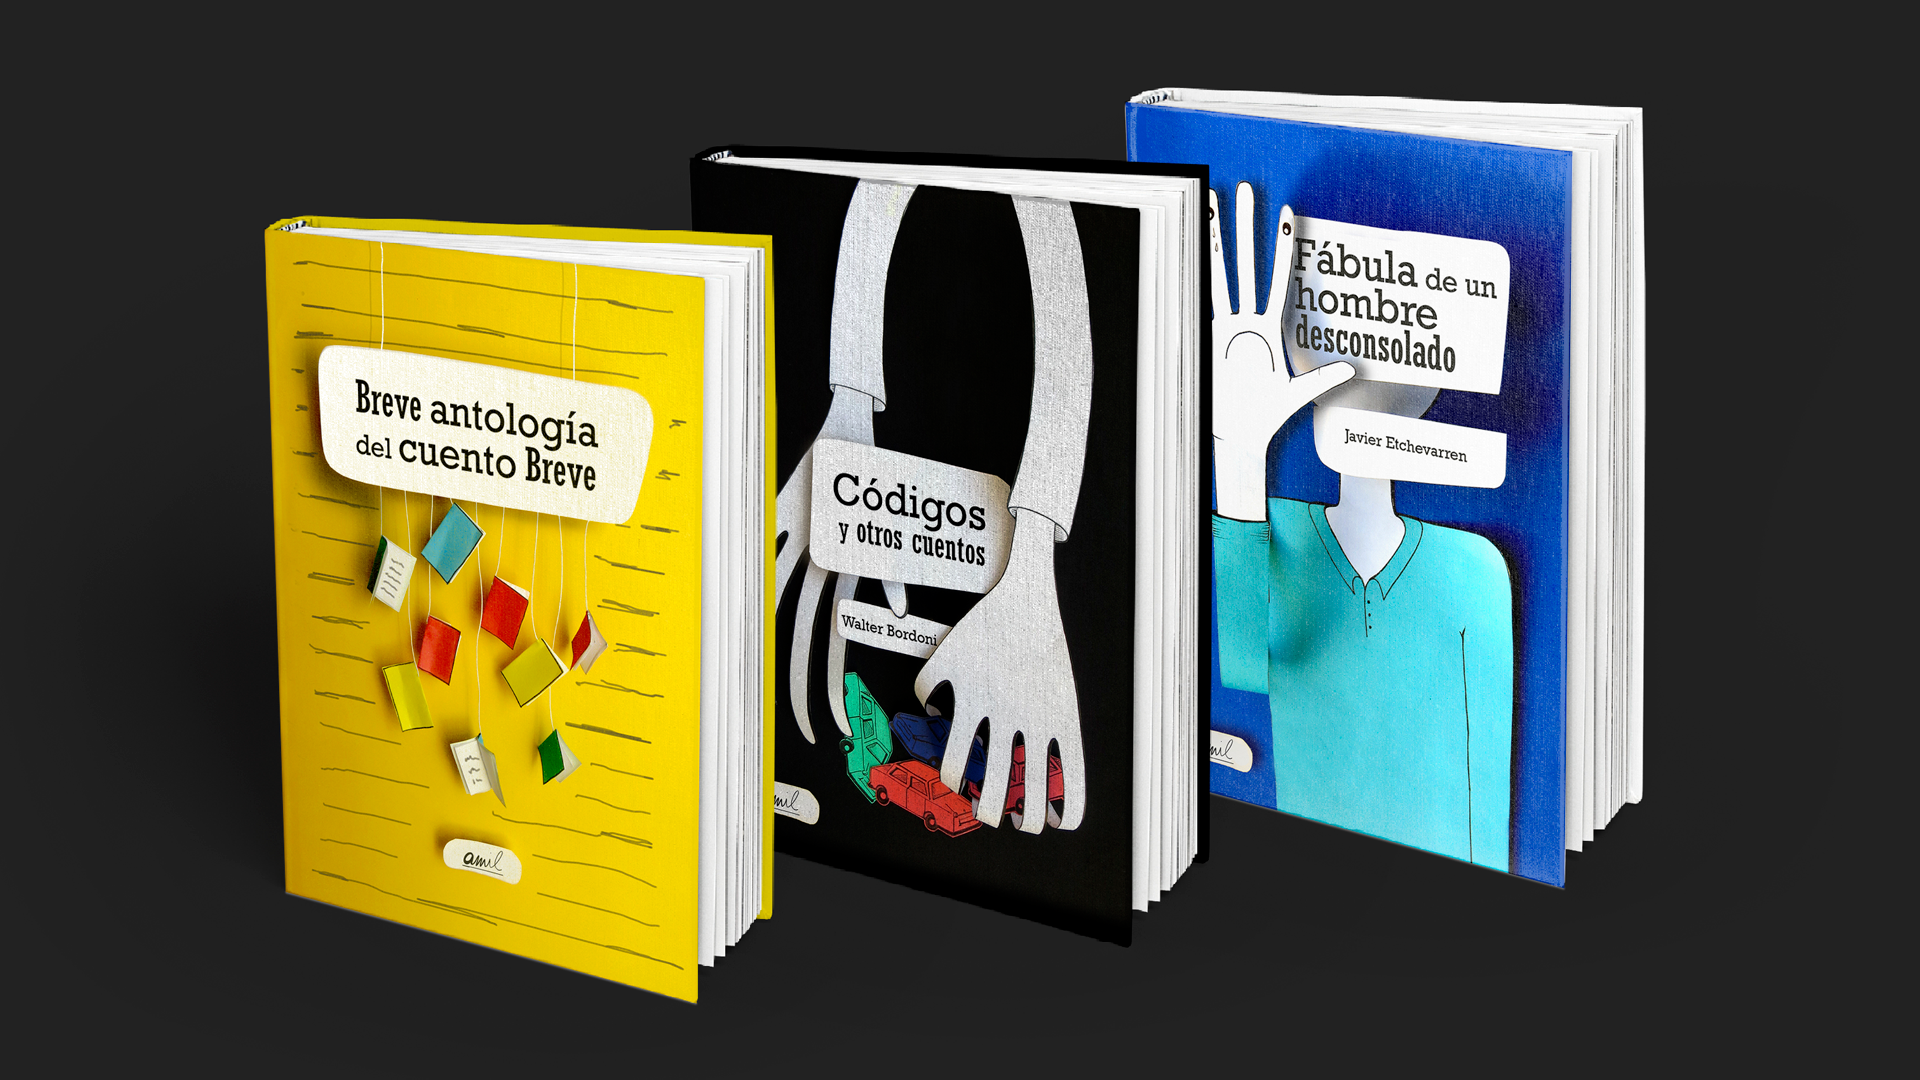 Portadas de libros - Adrine - Diseño gráfico